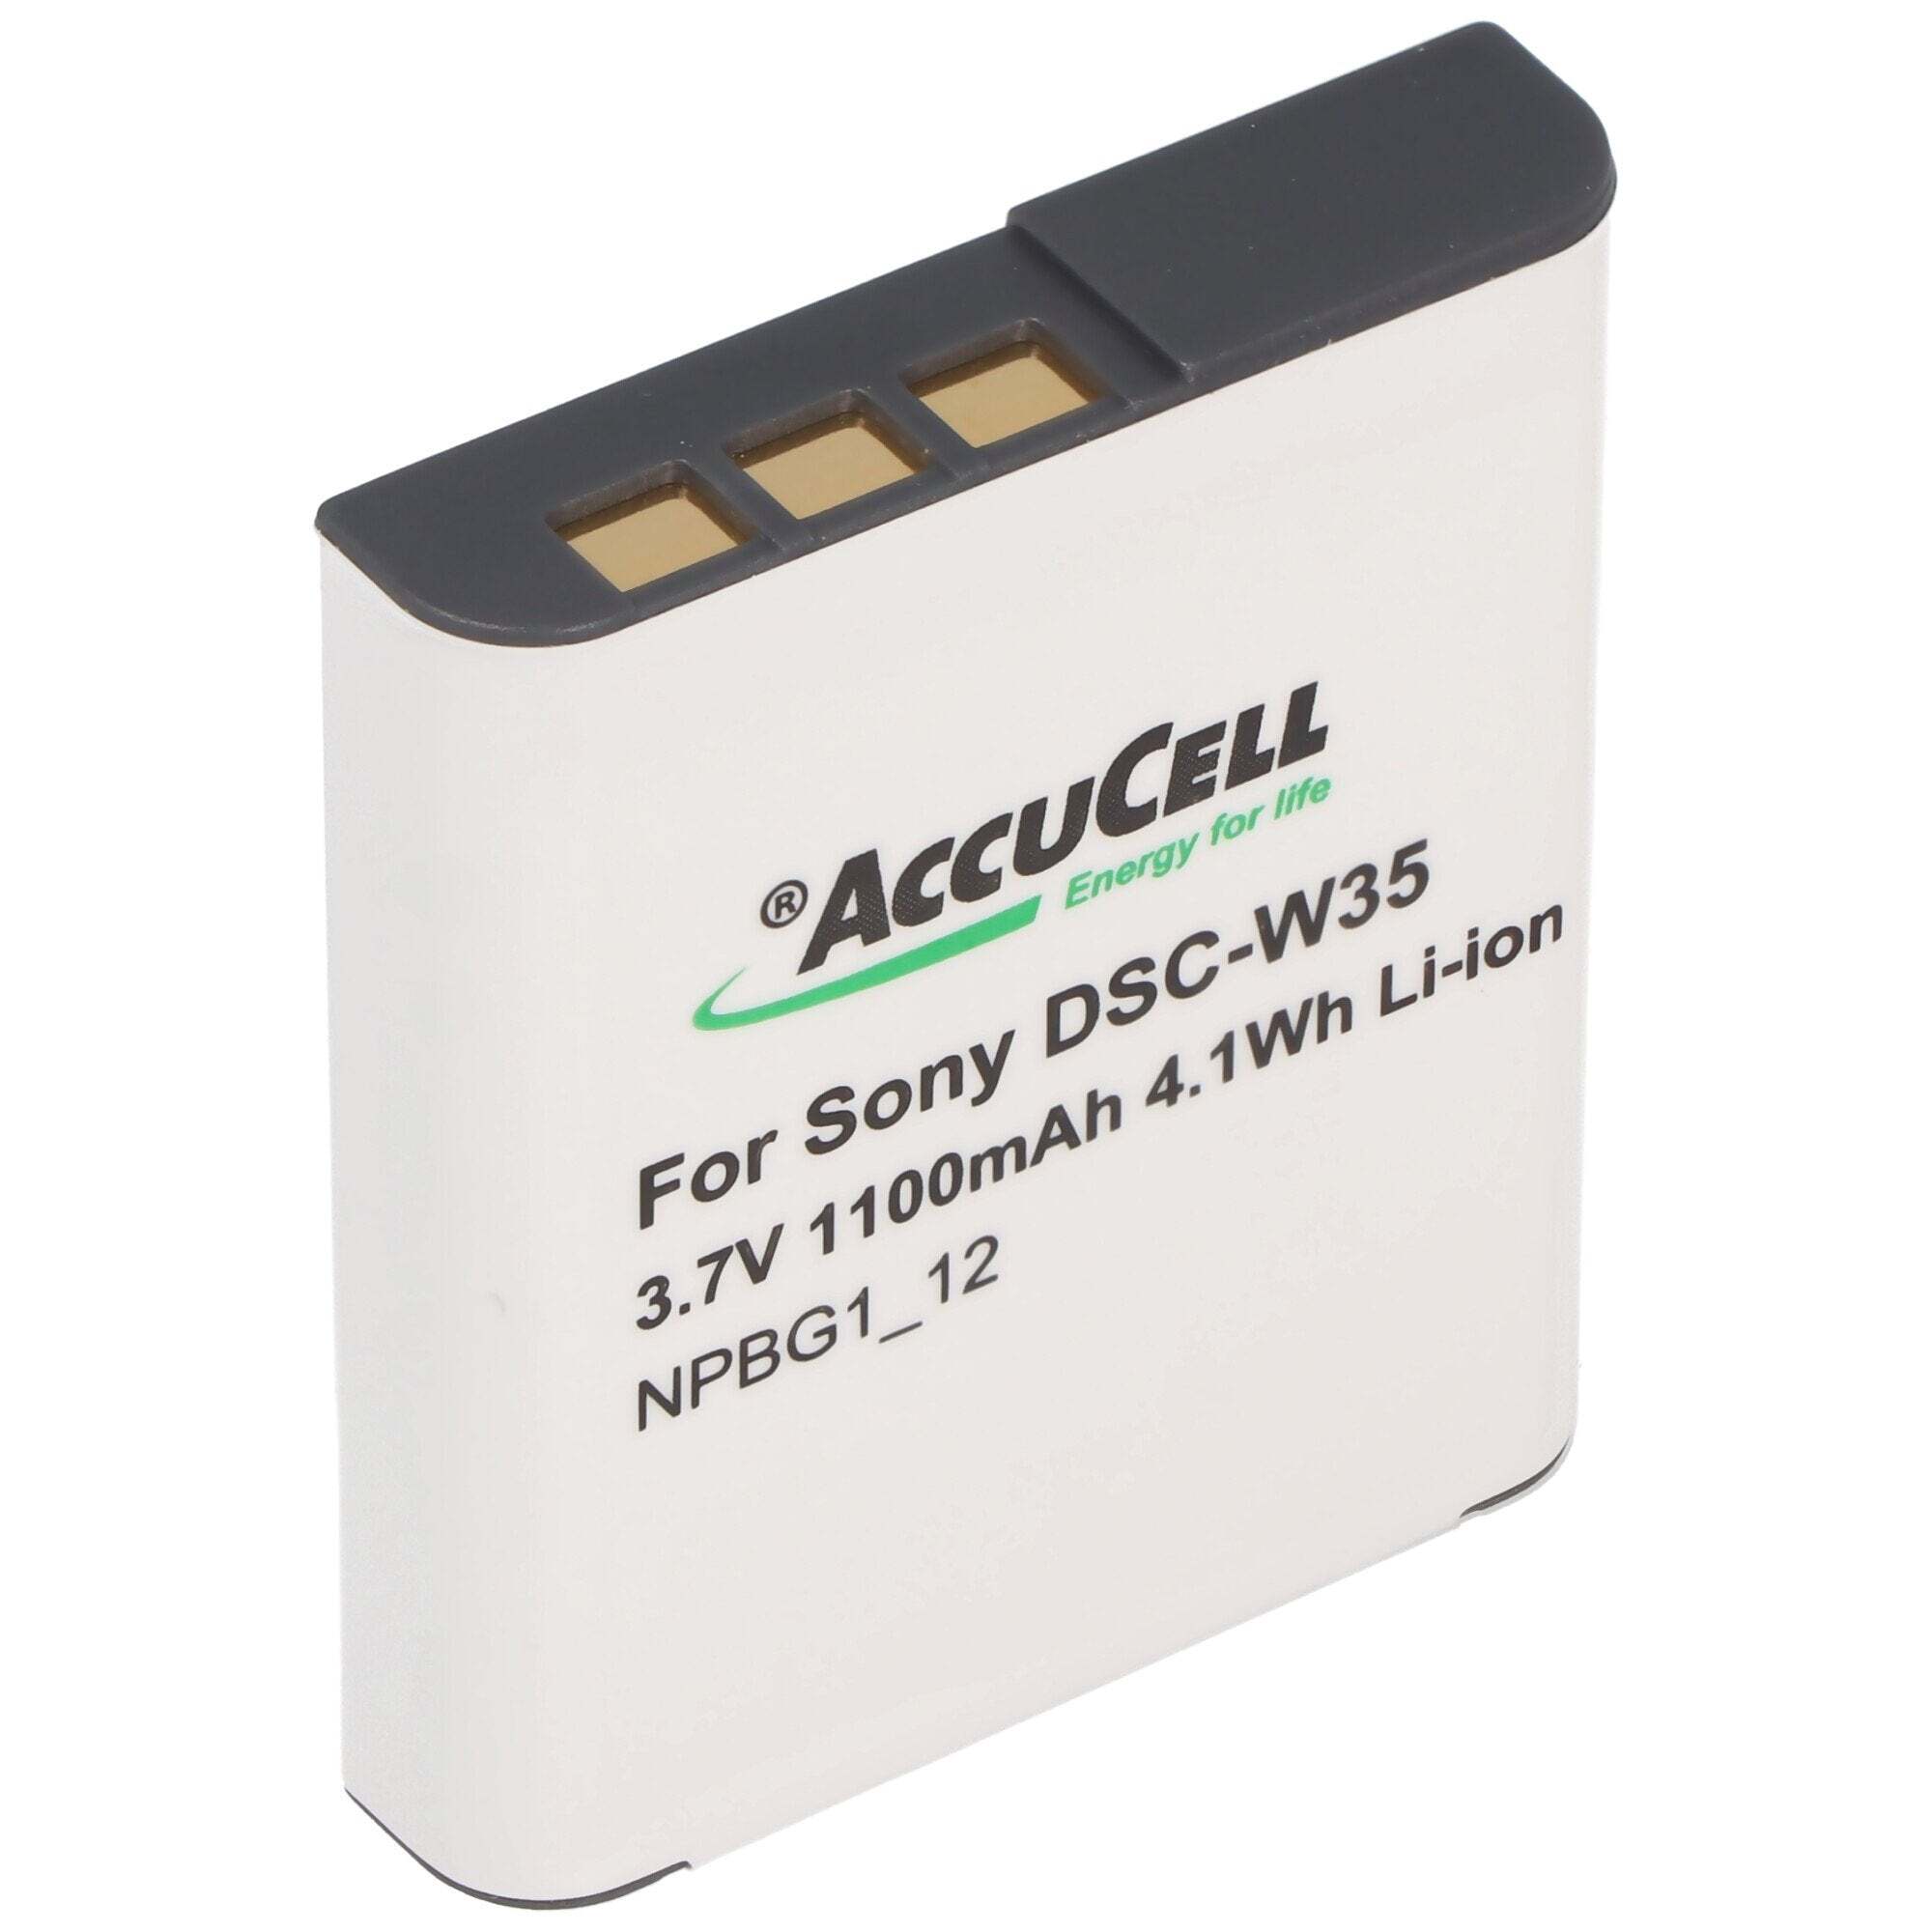 ACCUCELL AccuCell-batterij geschikt voor Sony DSC-W30